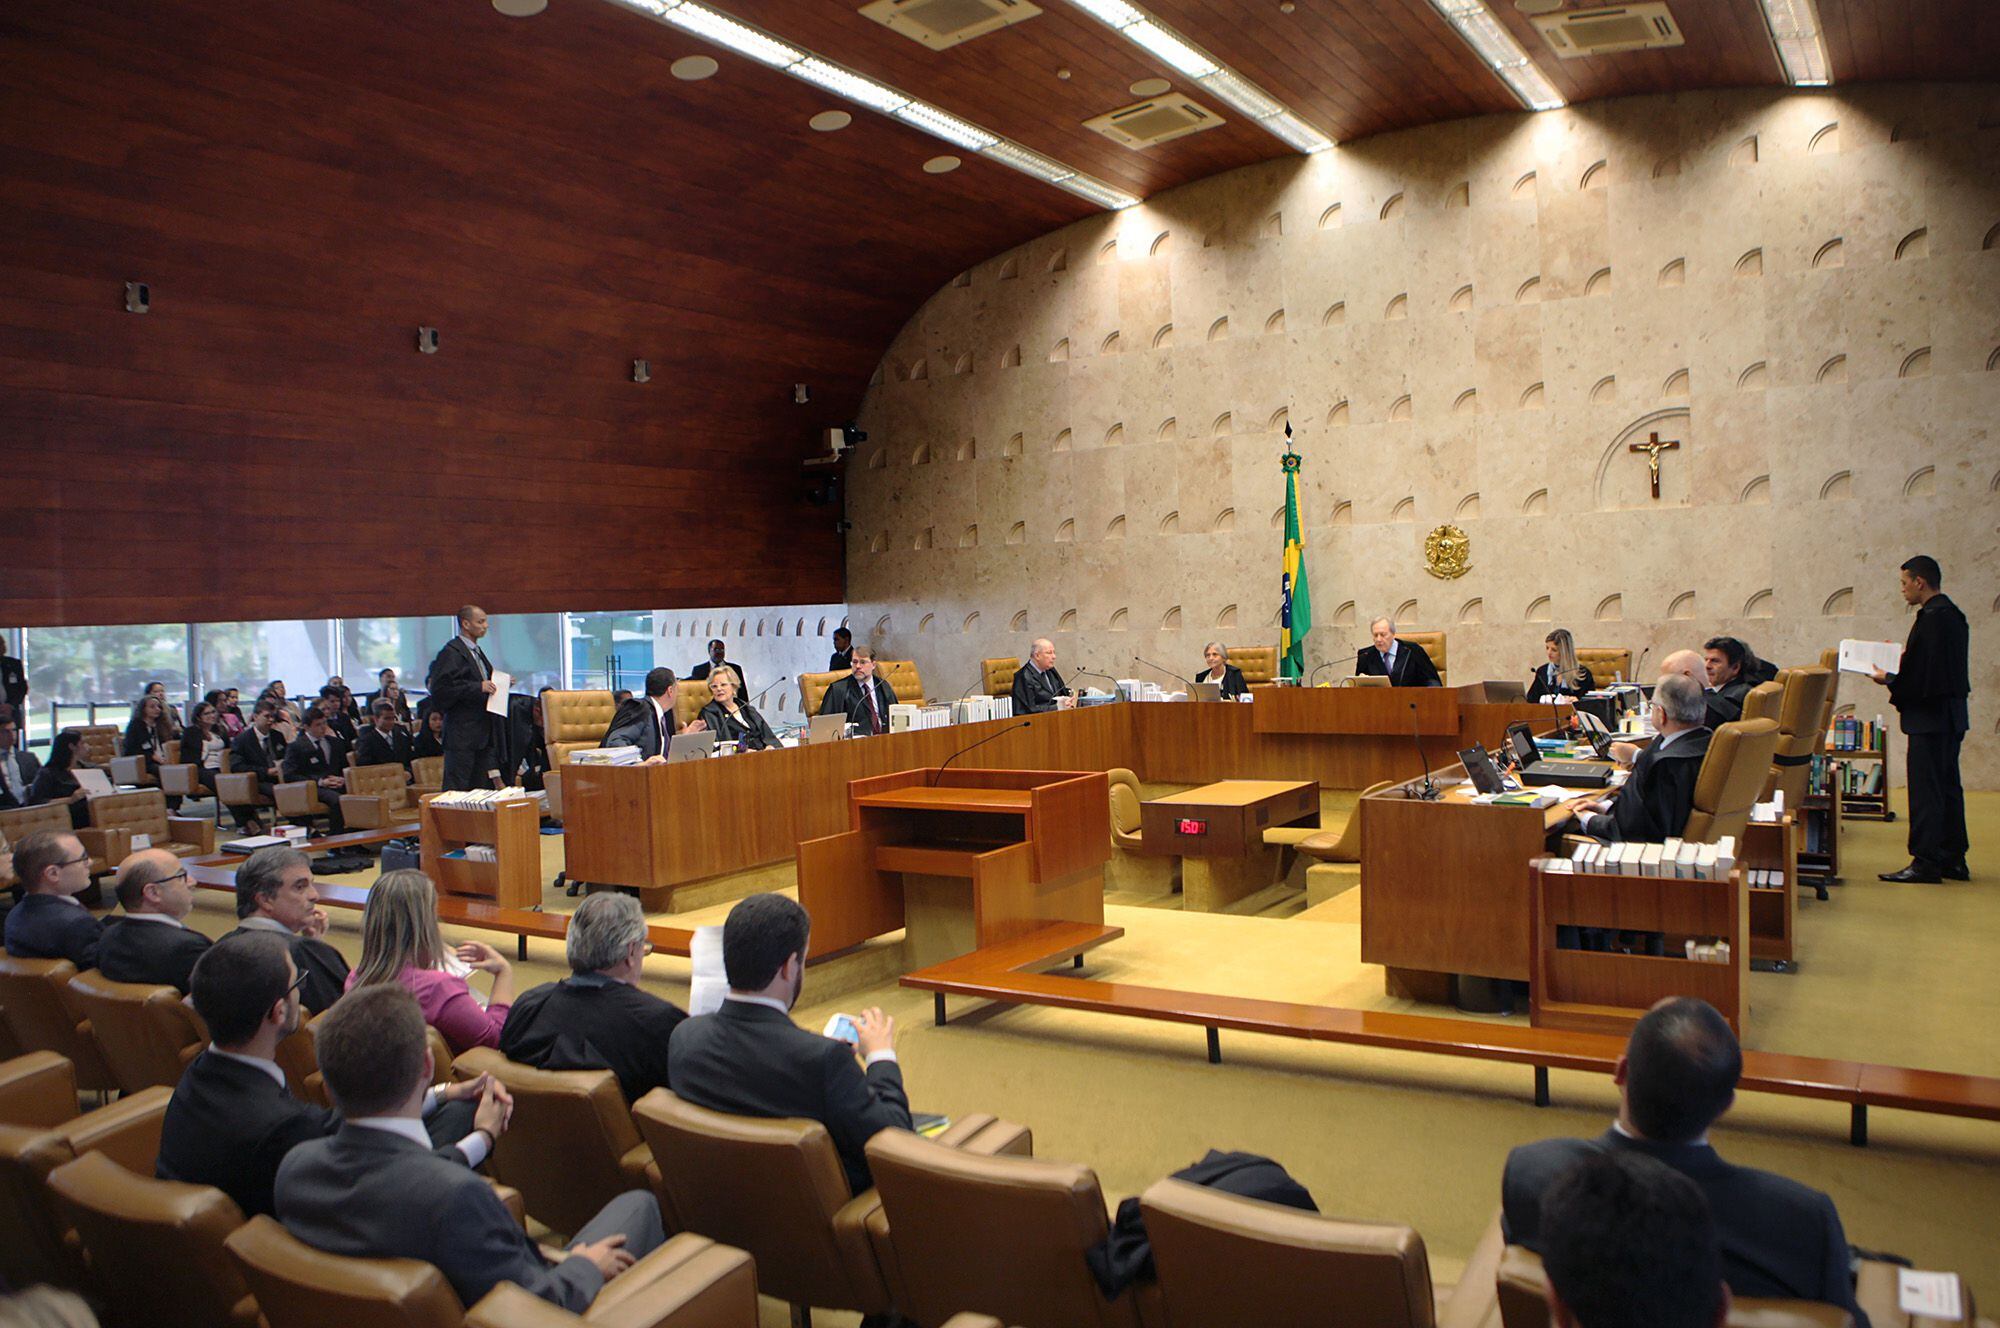 De momento cinco de los 11 jueces del alto tribunal brasileño votaron a favor de la despenalización de la marihuana para uso personal.